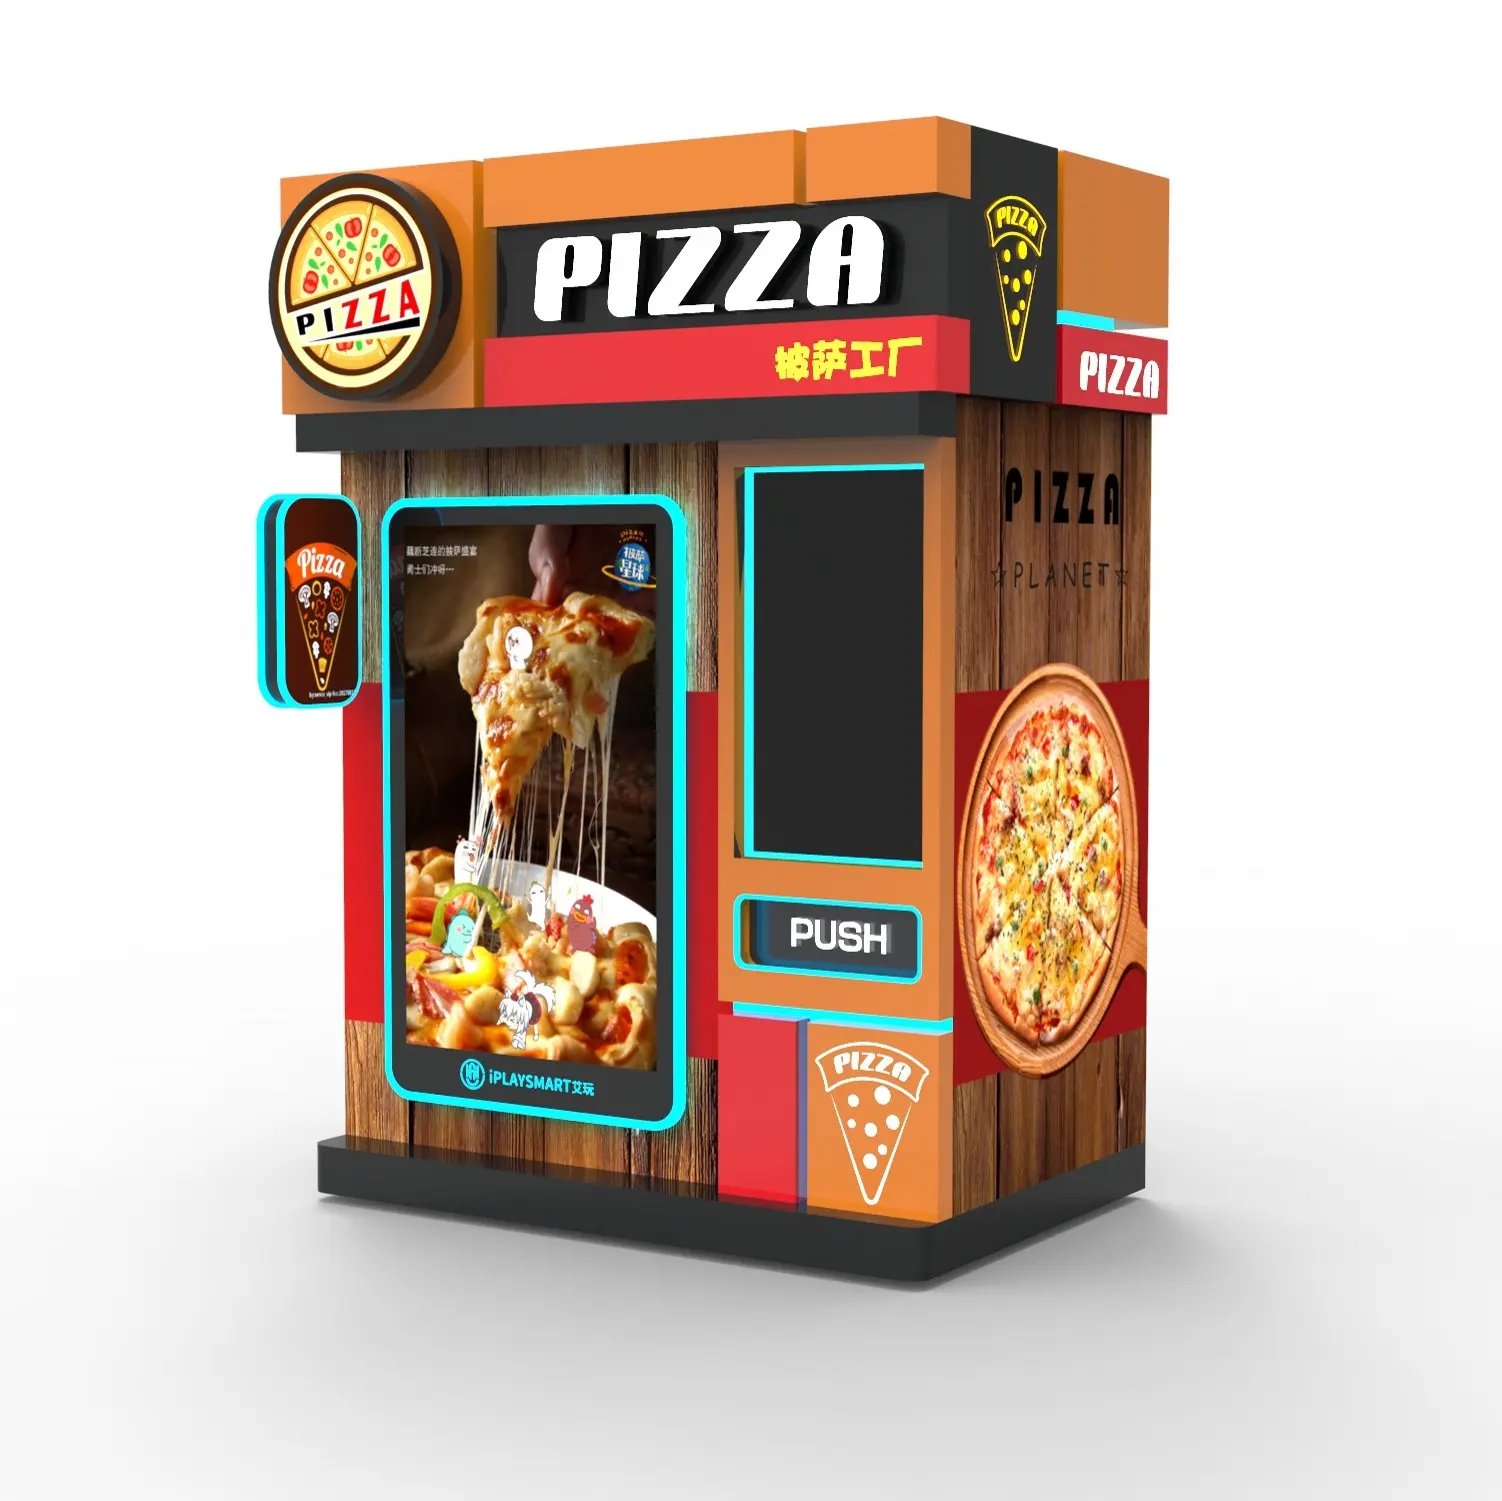 Máquina Expendedora de Pizza, para comida caliente, totalmente automática, inteligente